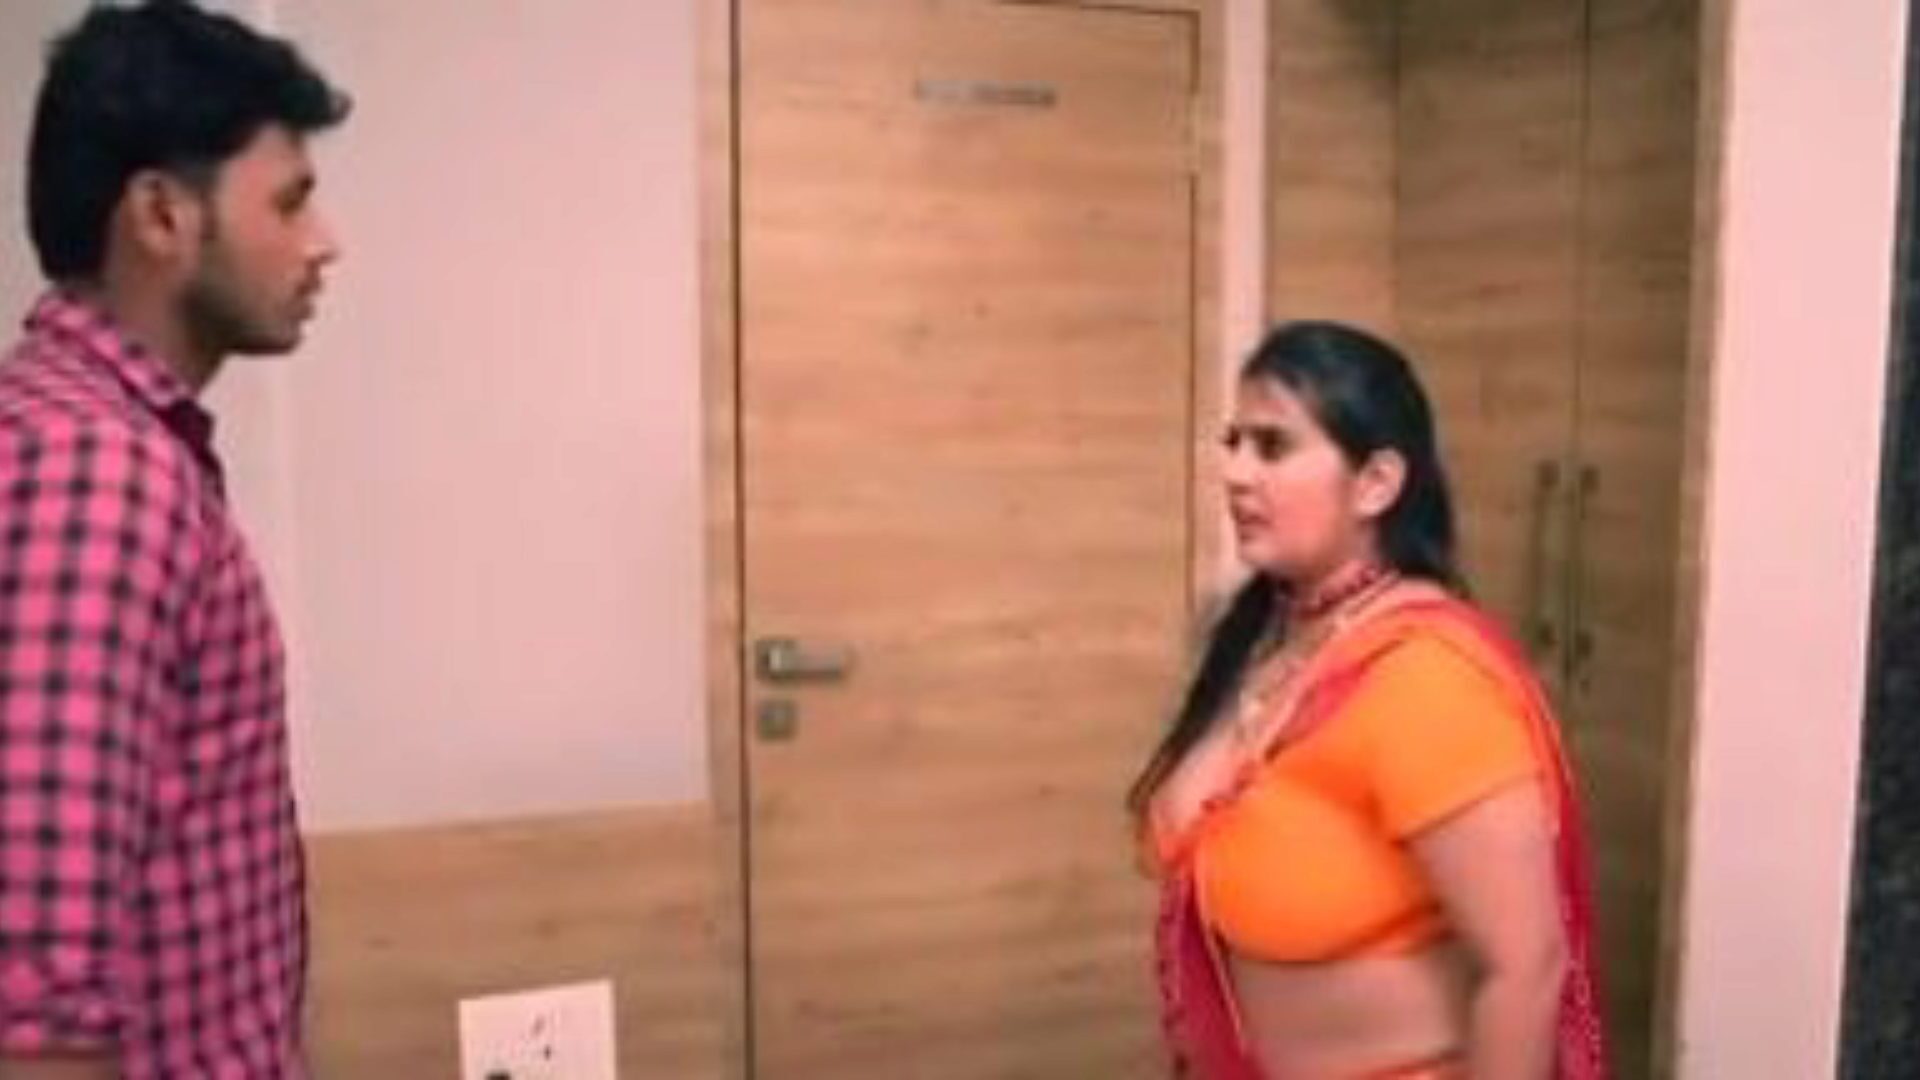 kanchan aunty ep5: gratis aunty xxx porno video 03 - xhamster se kanchan aunty ep5 tube elskov filmscene for gratis for alle på xhamster, med den overlegne stemningen av bangladeshisk tante xxx & aunty mobile porno film vignetter